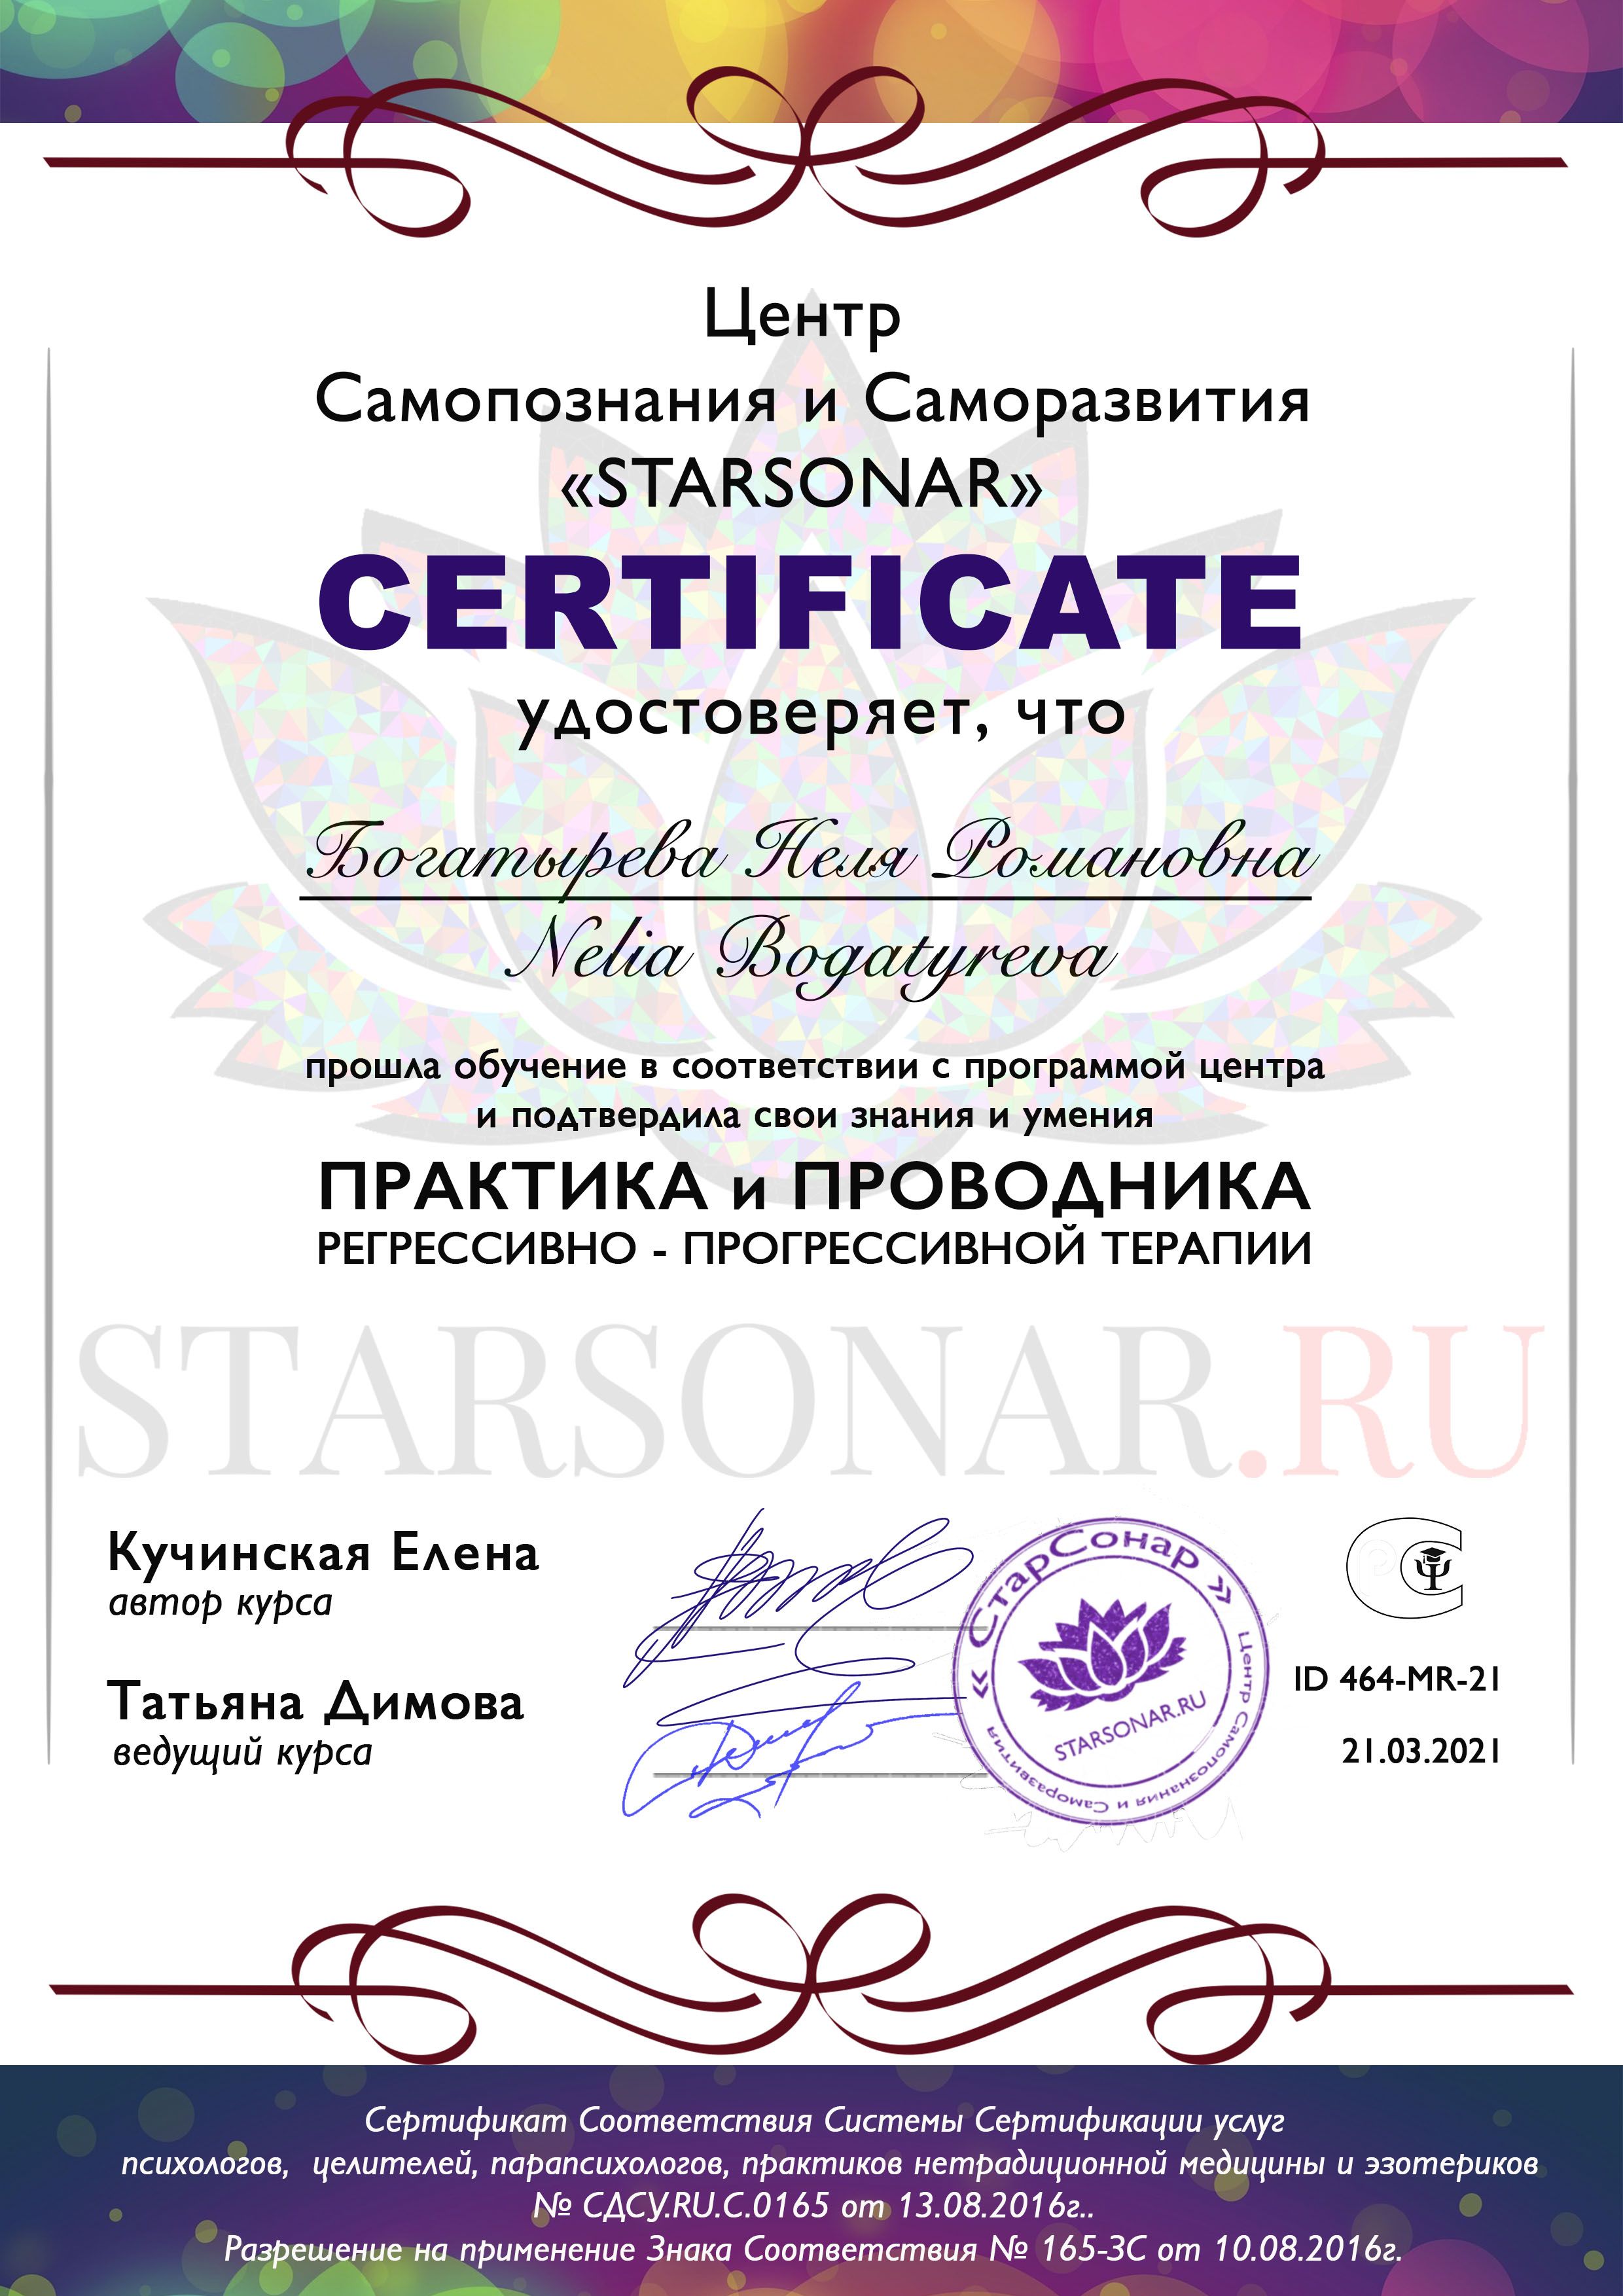 сертификат starsonar практика и проводника прогрессивной терапии